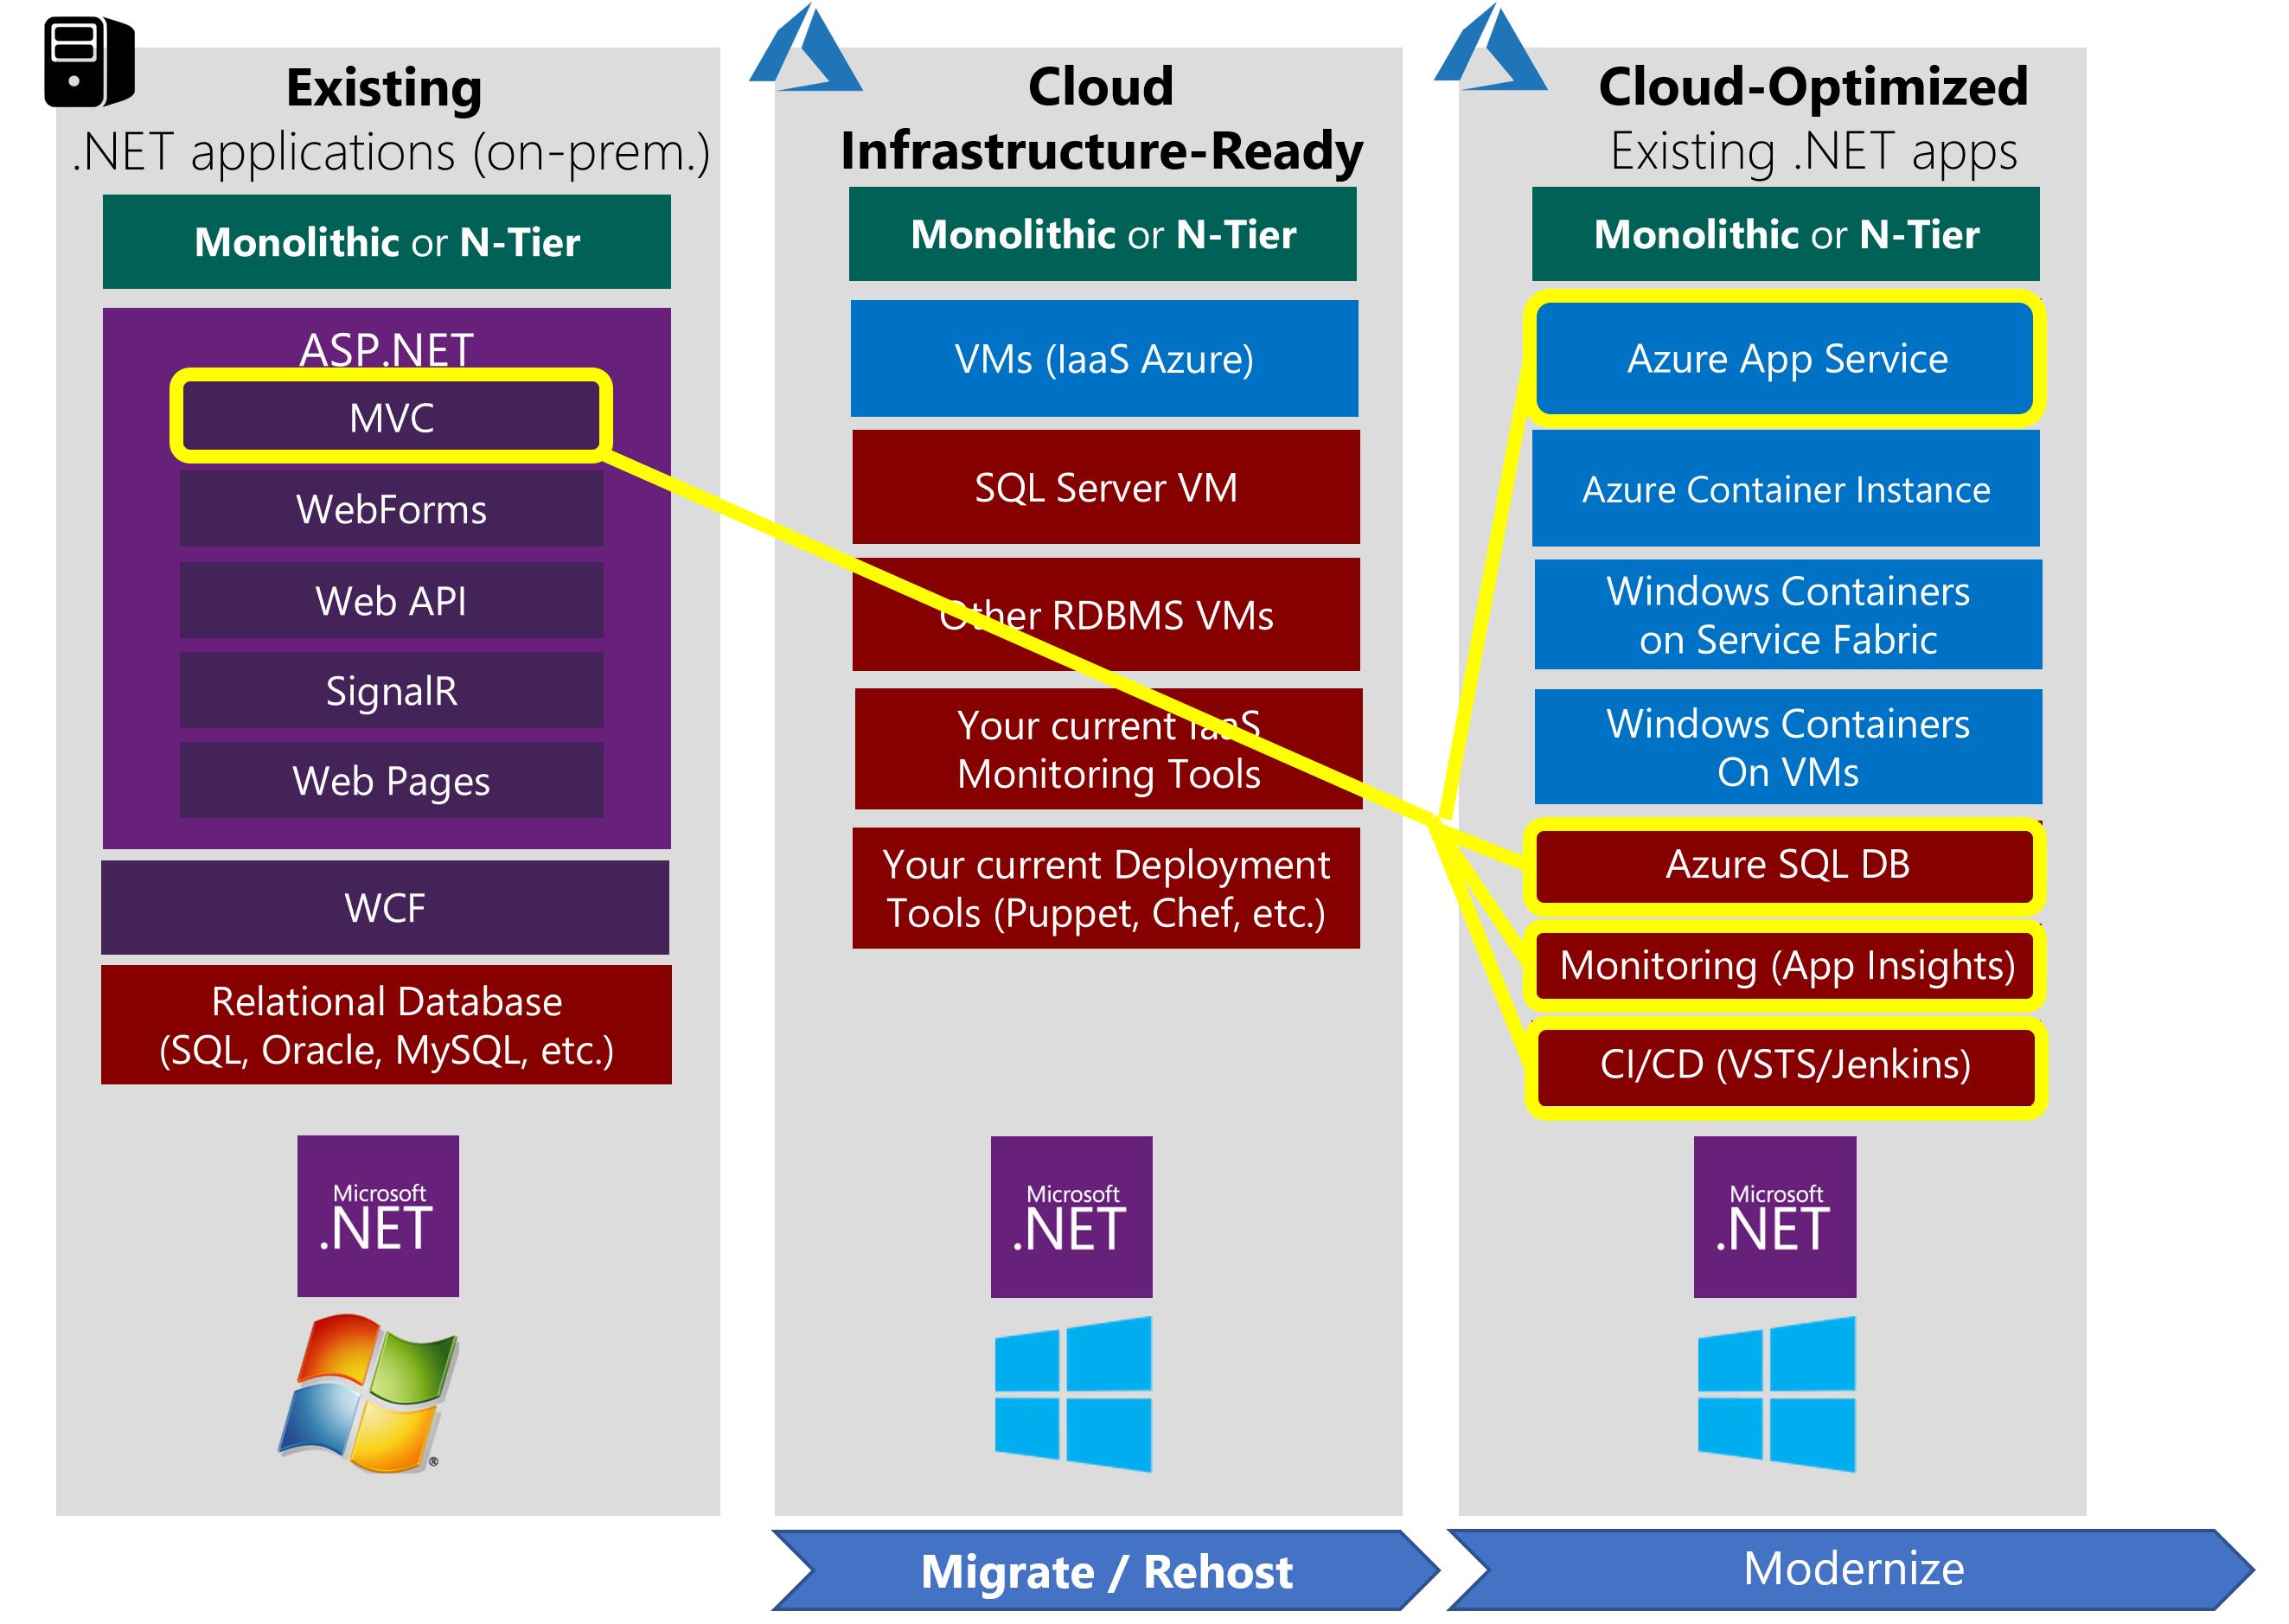 雲端最佳化應用程式案例範例，搭載 Windows 容器與受控服務